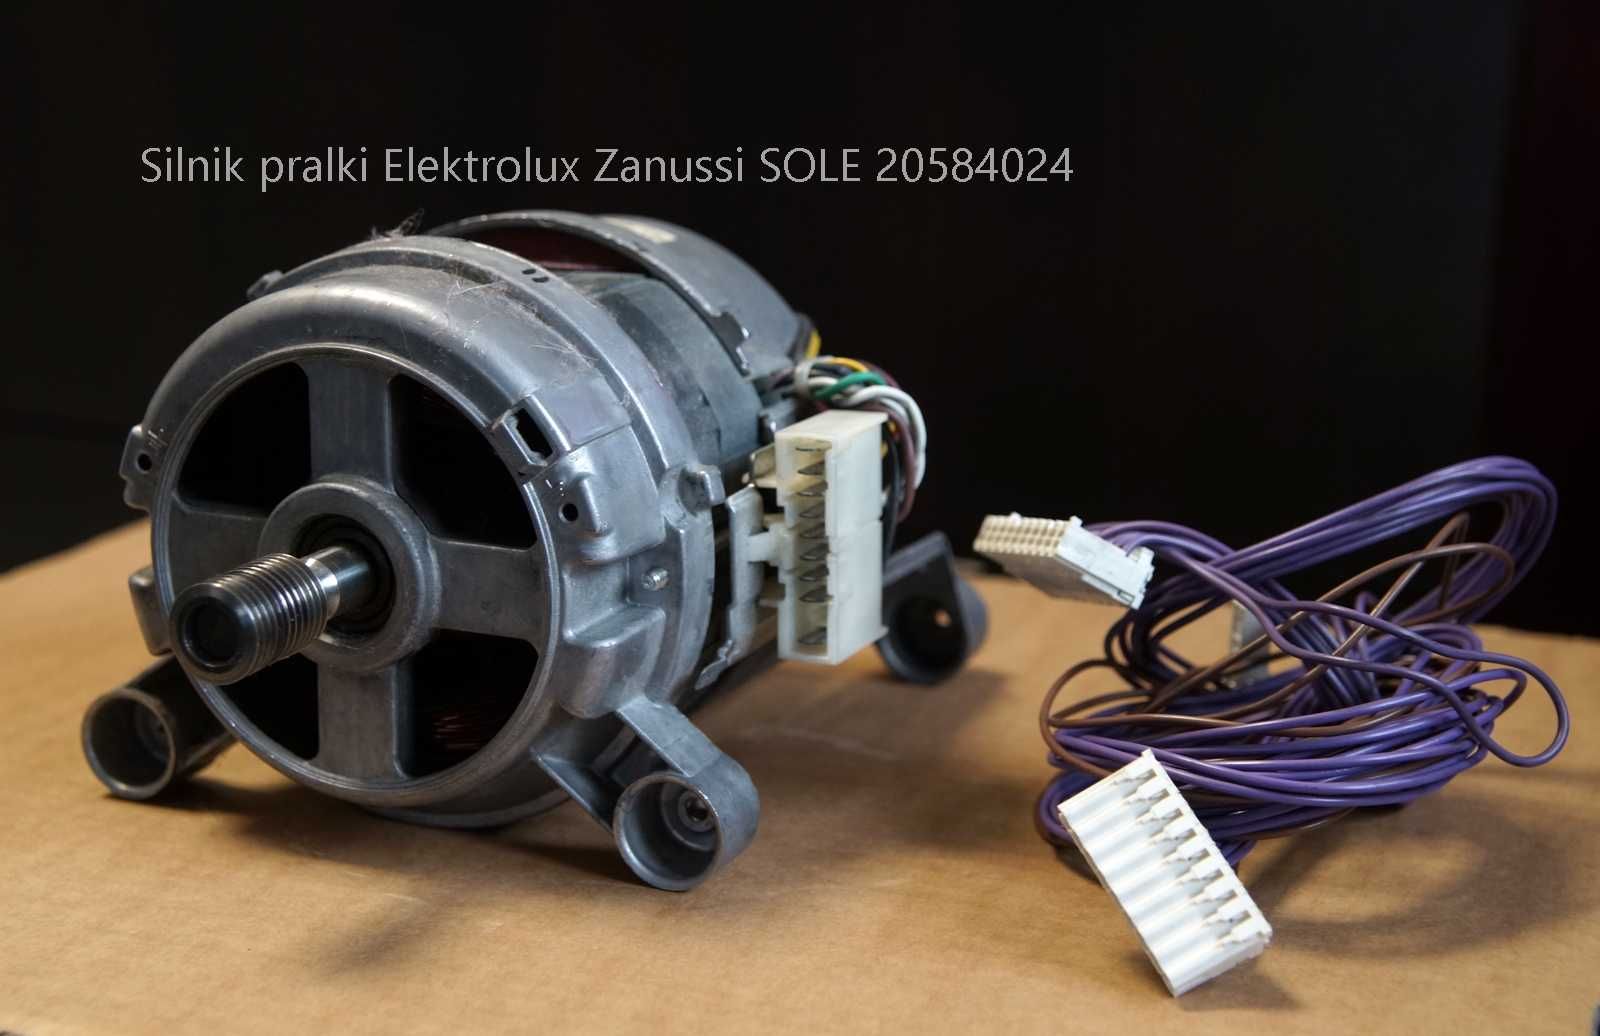 Silnik pralki Elektrolux Zanussi SOLE 20584,024